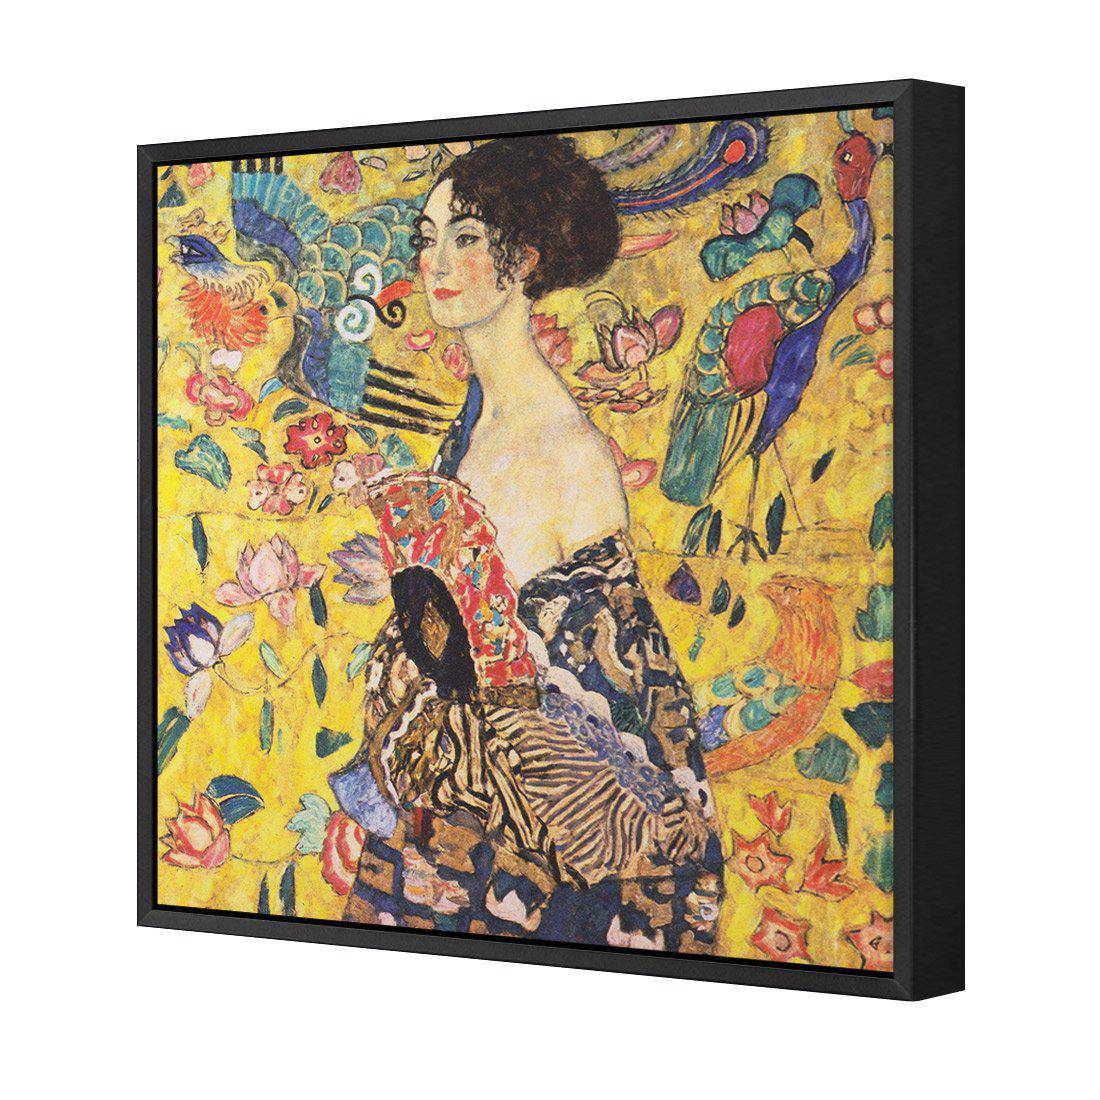 Lady With Fan - Gustav Klimt Canvas Art-Canvas-Wall Art Designs-30x30cm-Canvas - Black Frame-Wall Art Designs